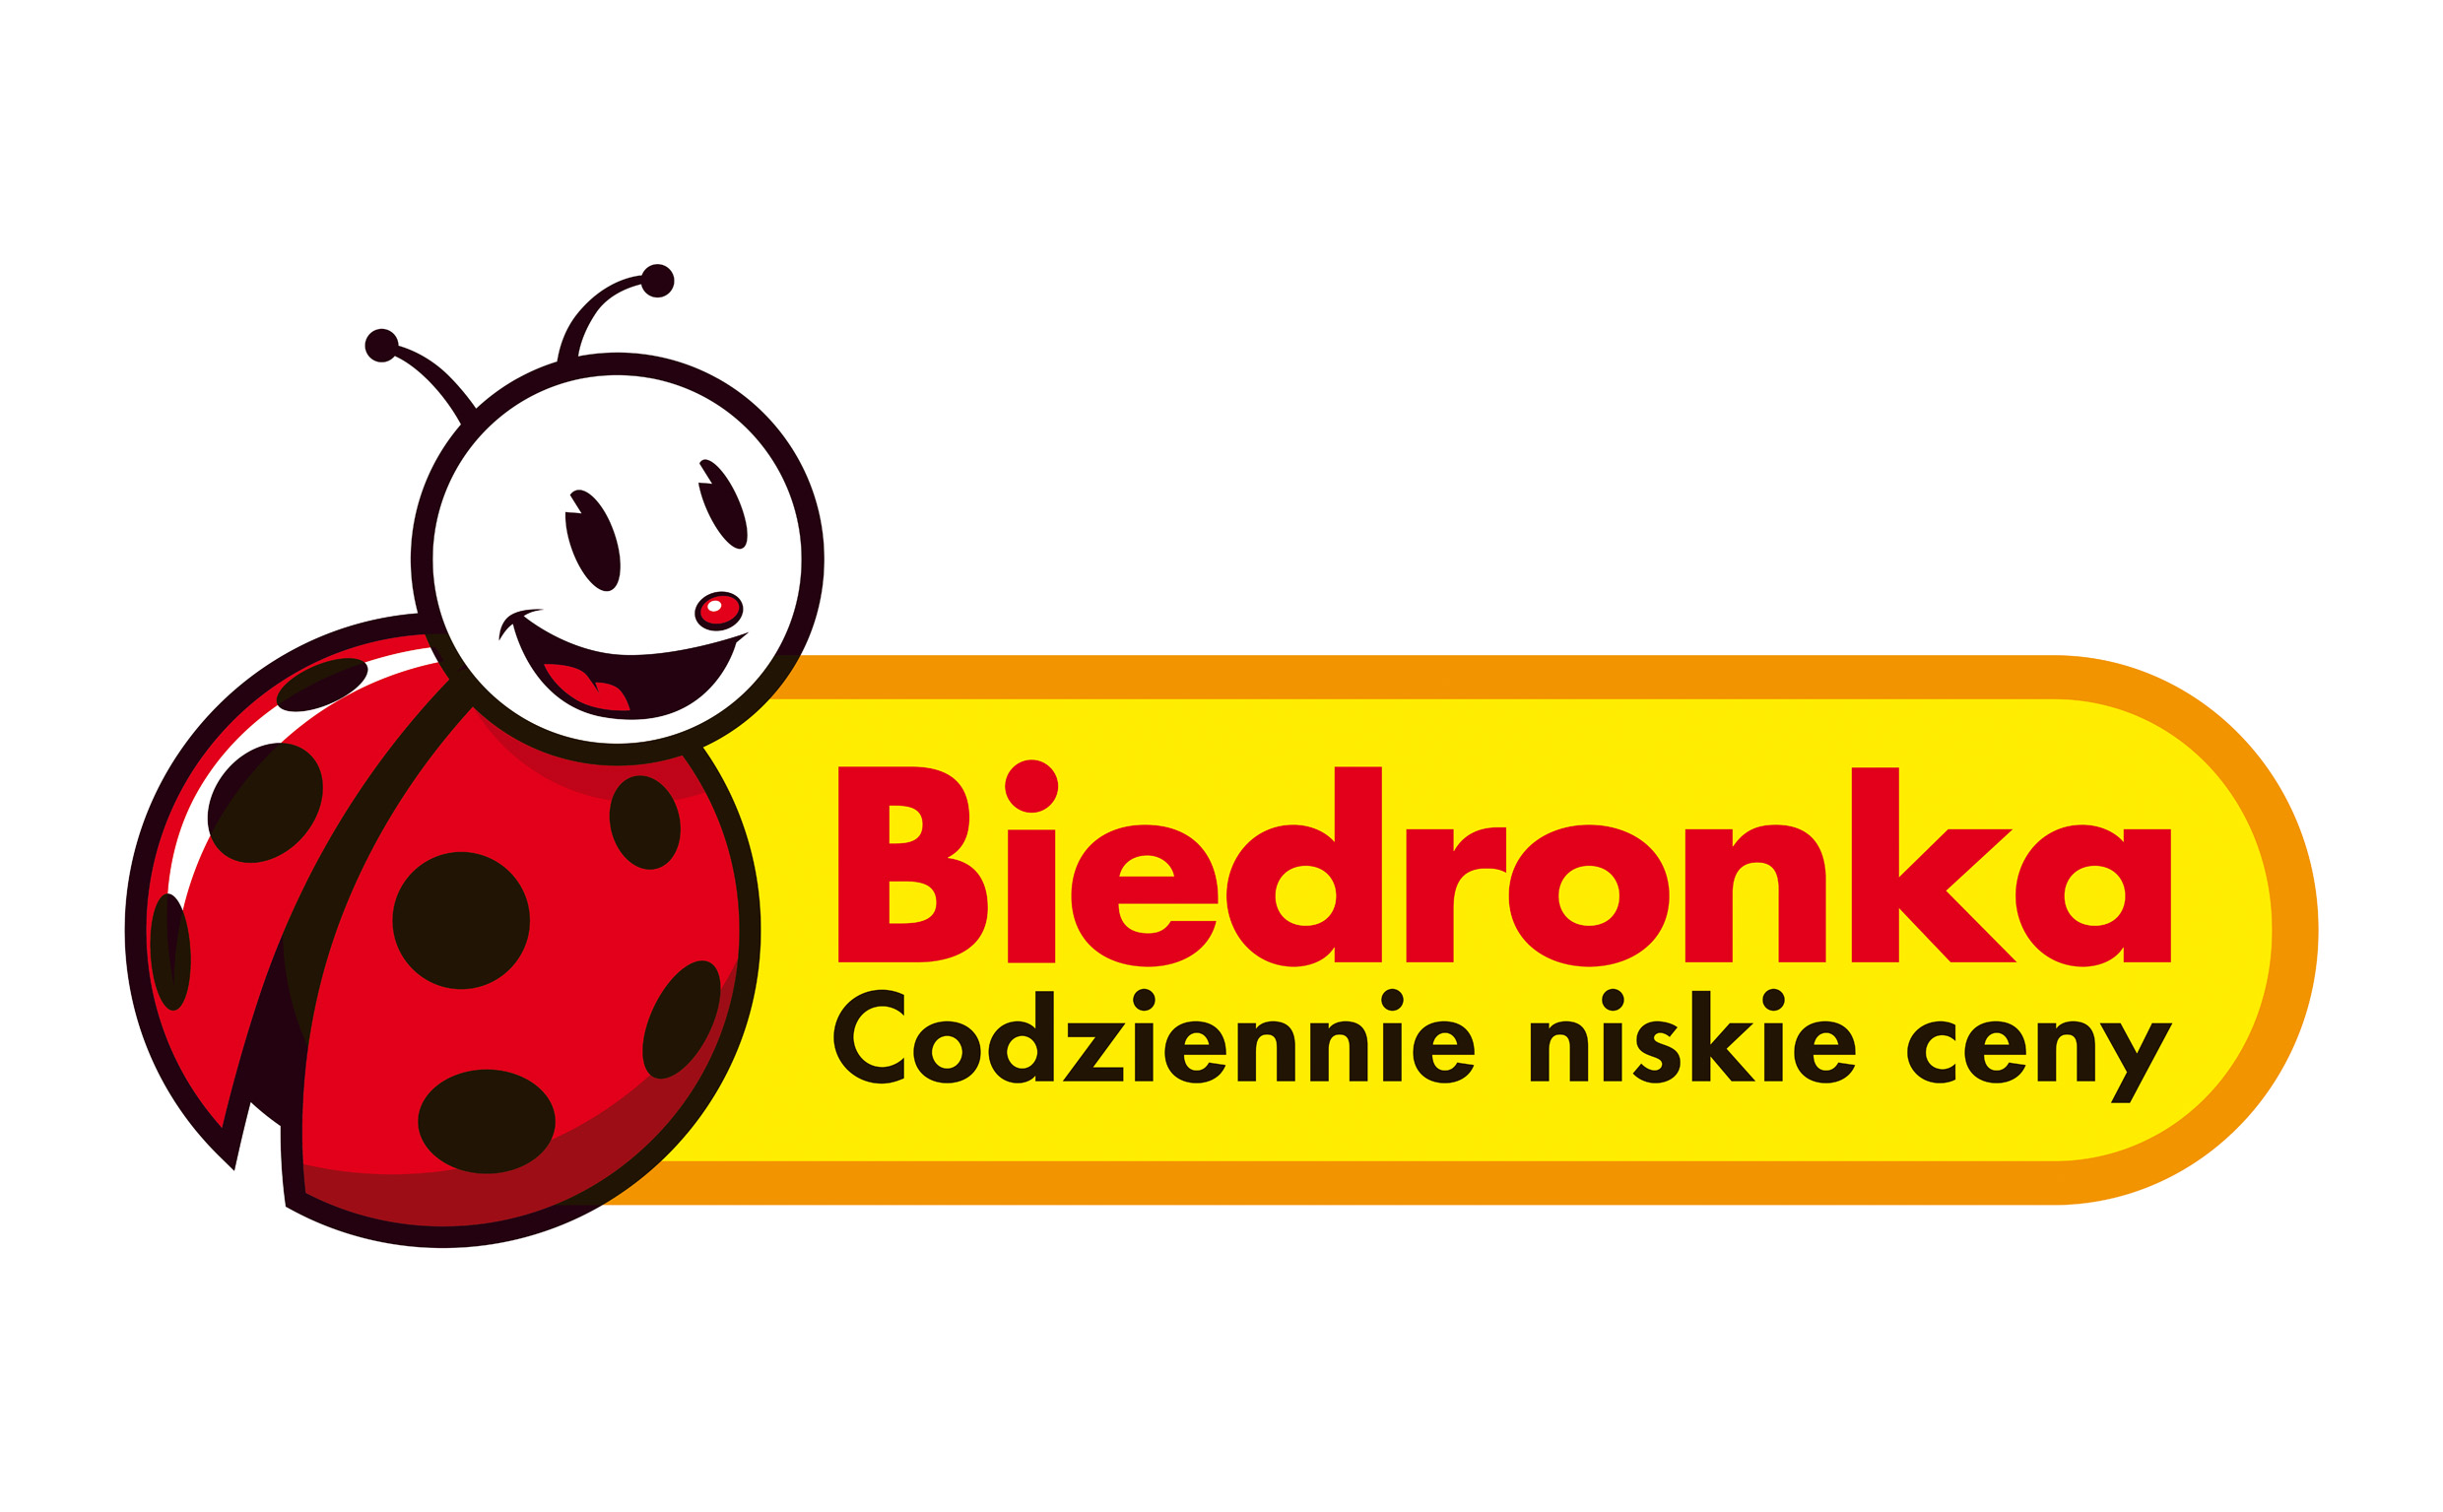 Biedronka, Carrefour i Tesco najbardziej medialnymi sieciami handlowymi w Polsce